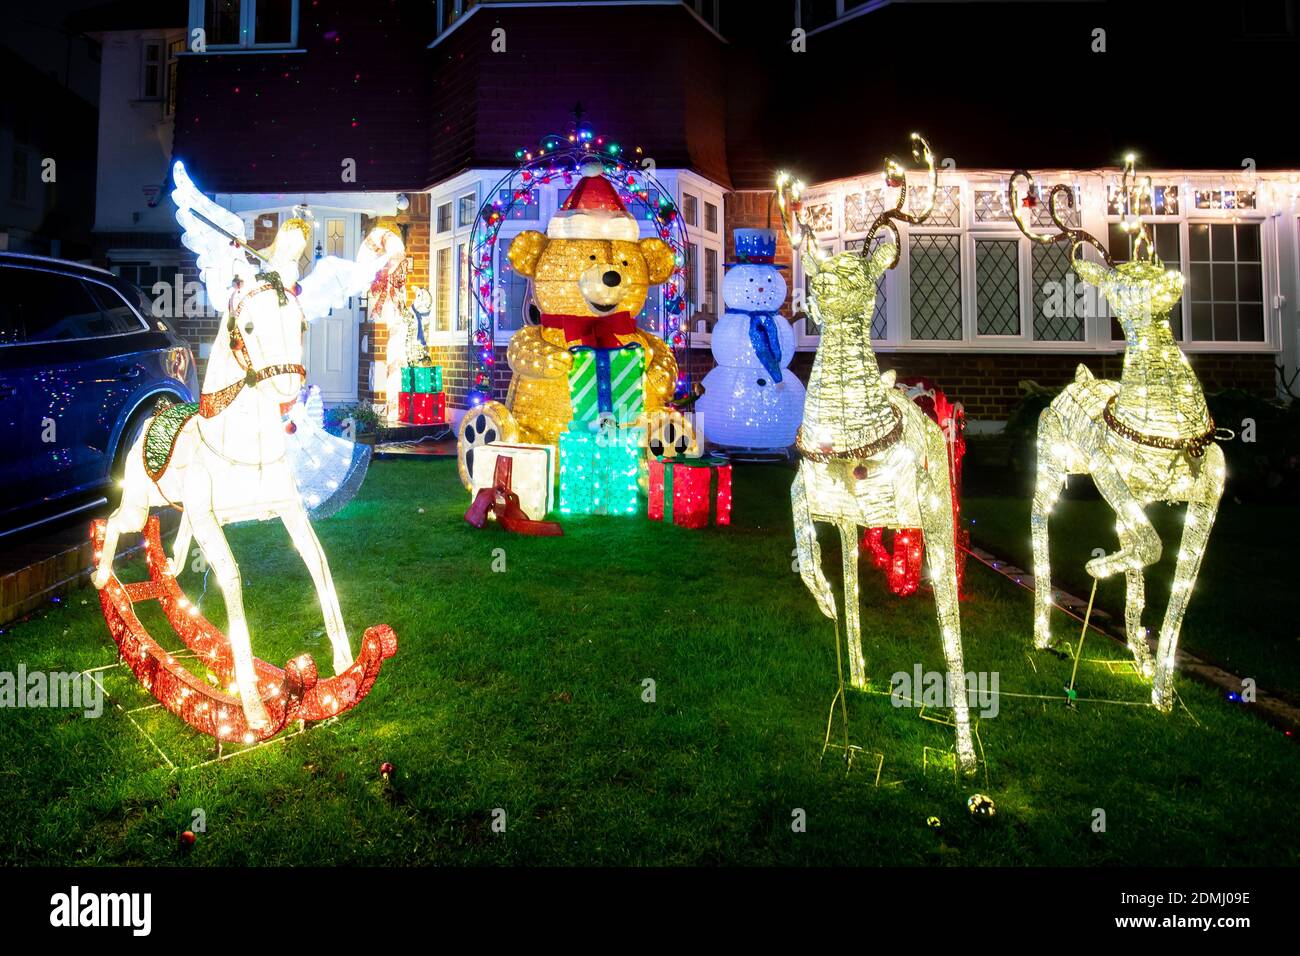 Les illuminations de Noël s'affichent sur les maisons de Lower Morden Lane, dans le sud de Londres, où les résidents demandent aux visiteurs de faire un don caritatif au profit de l'Hospice de Saint-Raphaël, une étape à la fois, et du maire de la Charity Trust de Merton. Banque D'Images